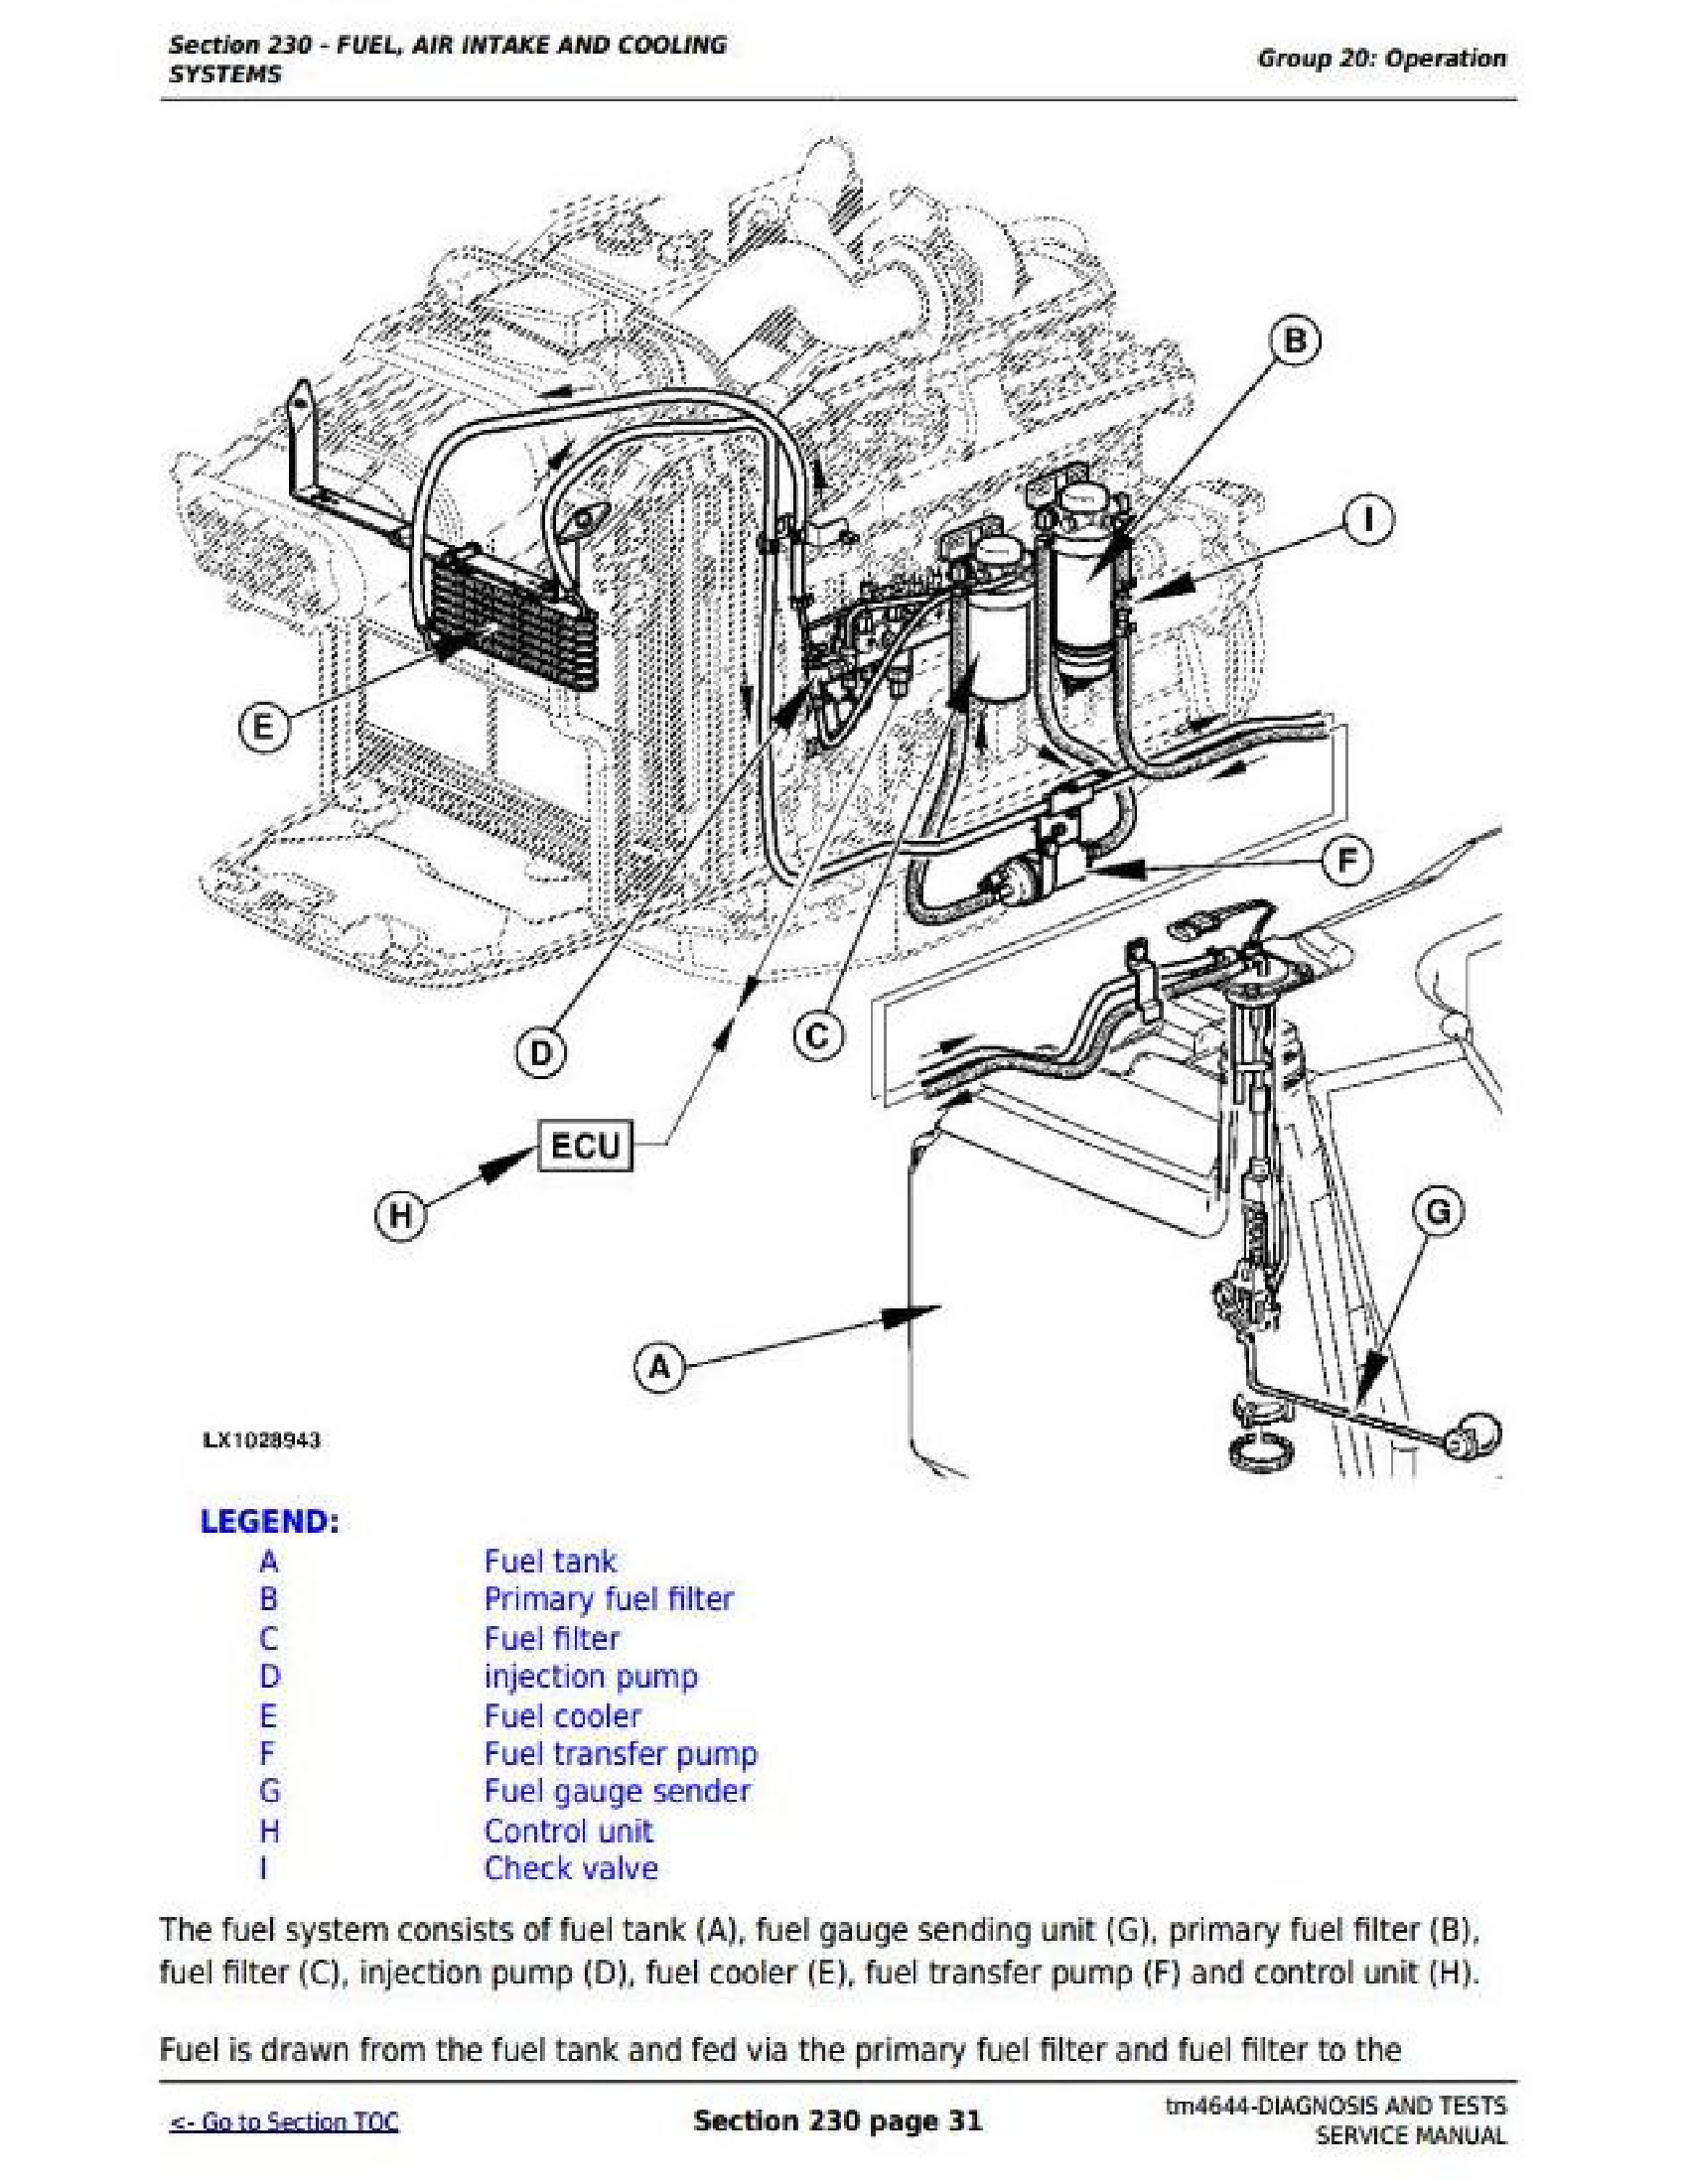 John Deere S690 manual pdf